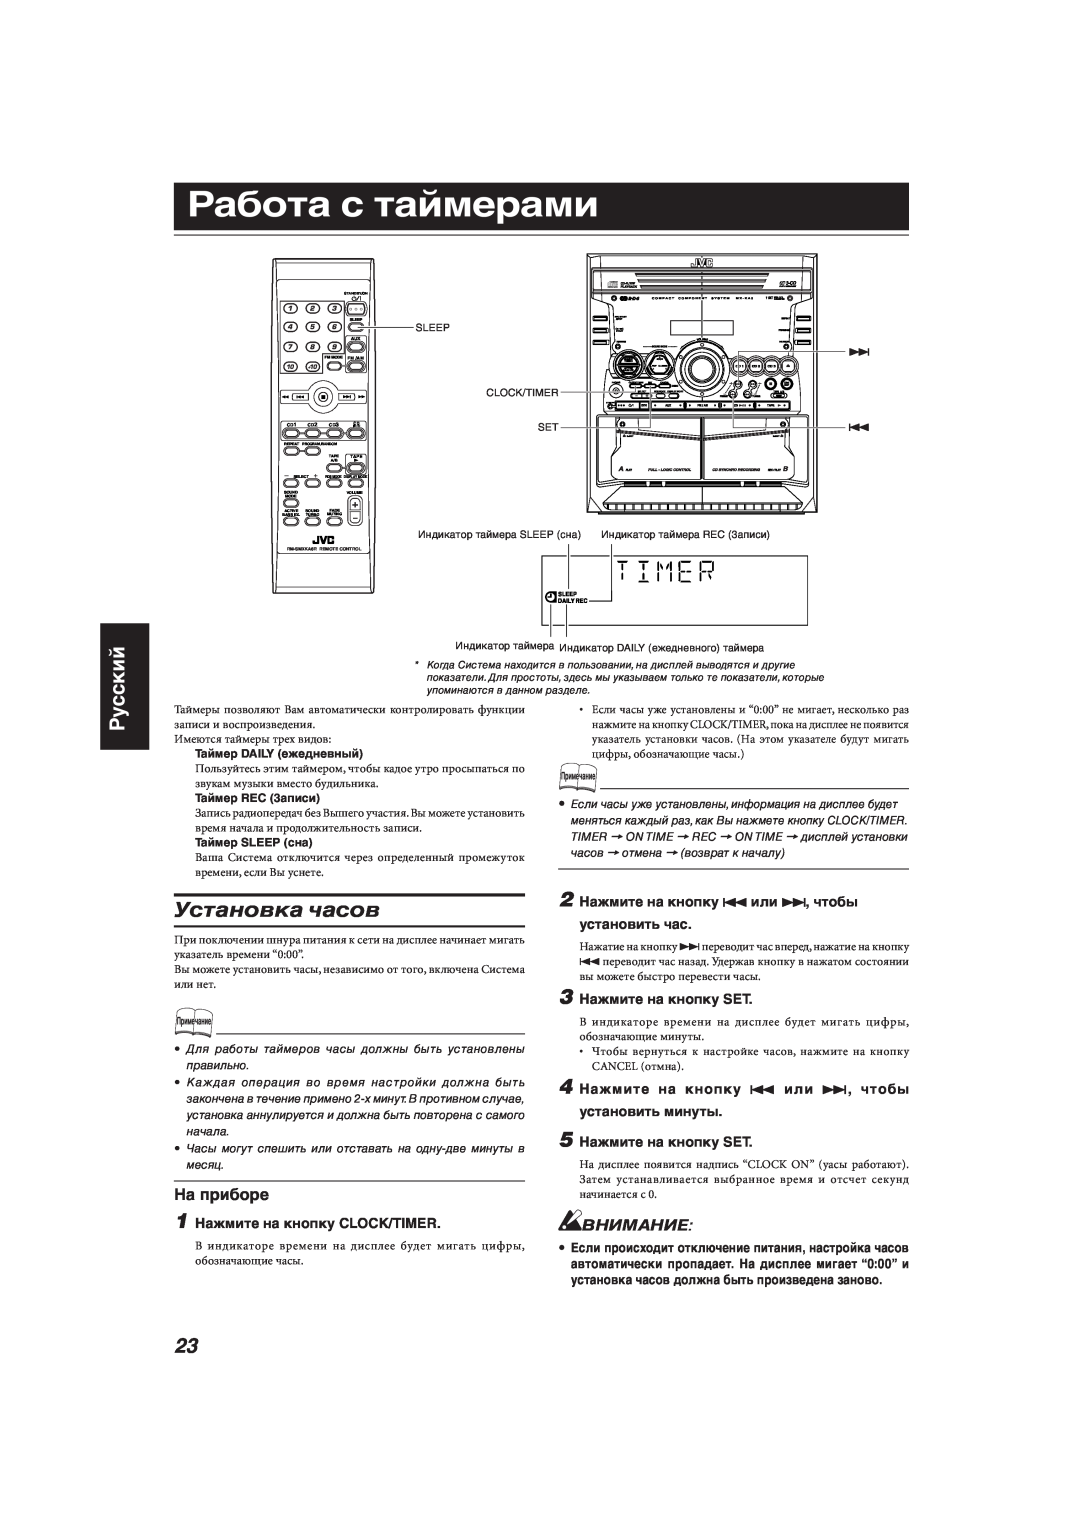 JVC MX-KA33 manual Работа с таймерами, Установка часов, Русский, Внимание, 1 Нажмите на кнопку CLOCK/TIMER 